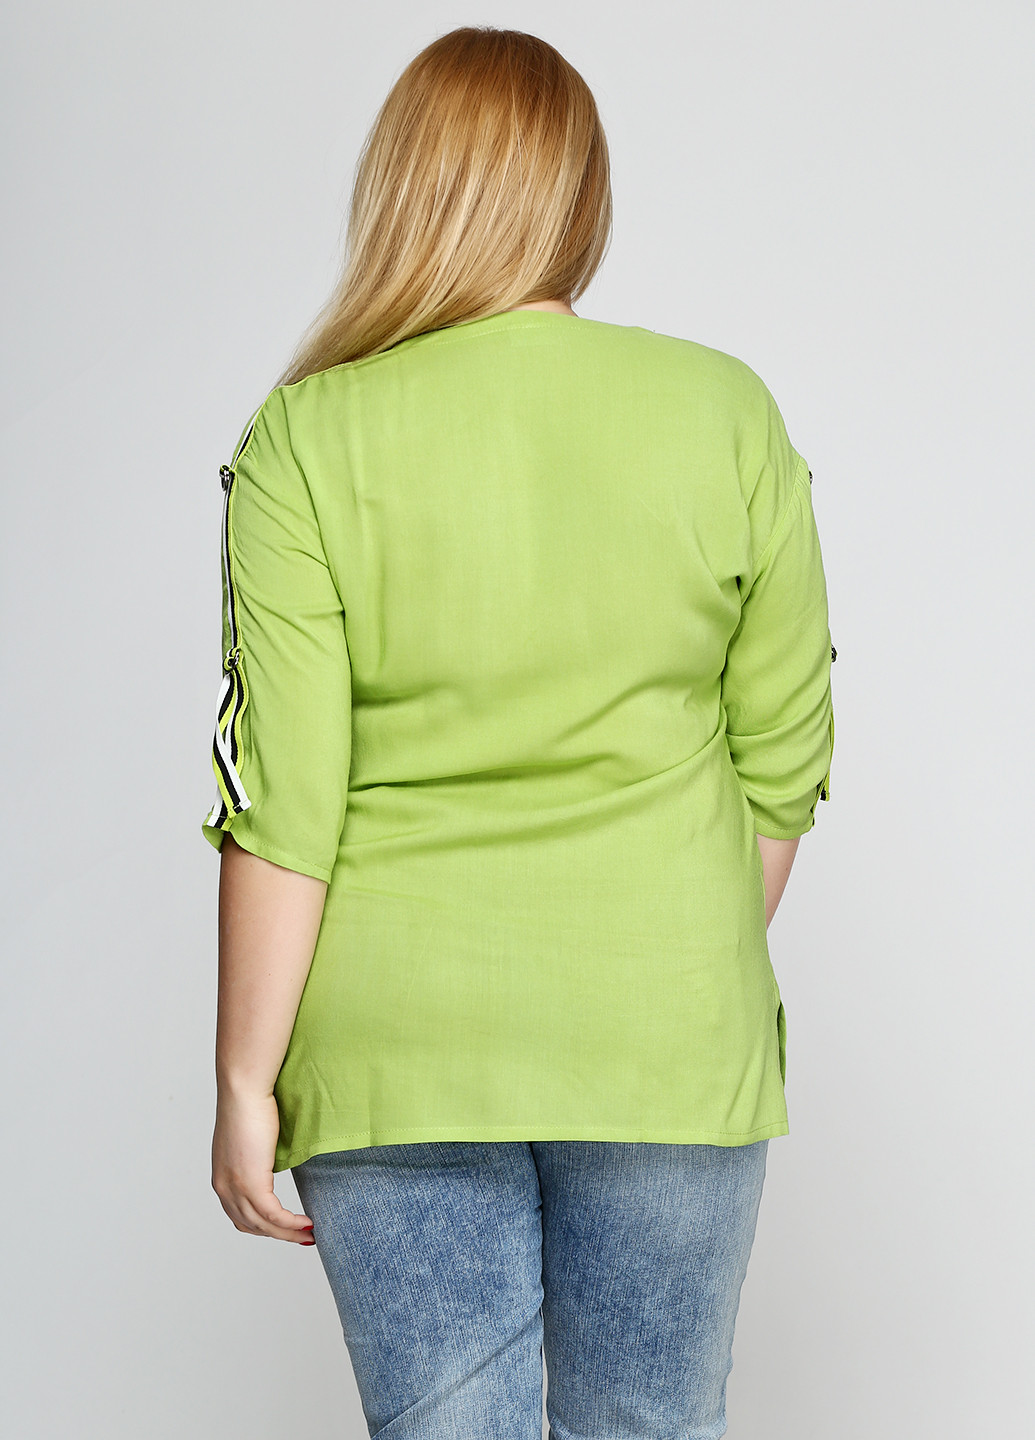 Світло-зелена демісезонна блуза Ruta-S